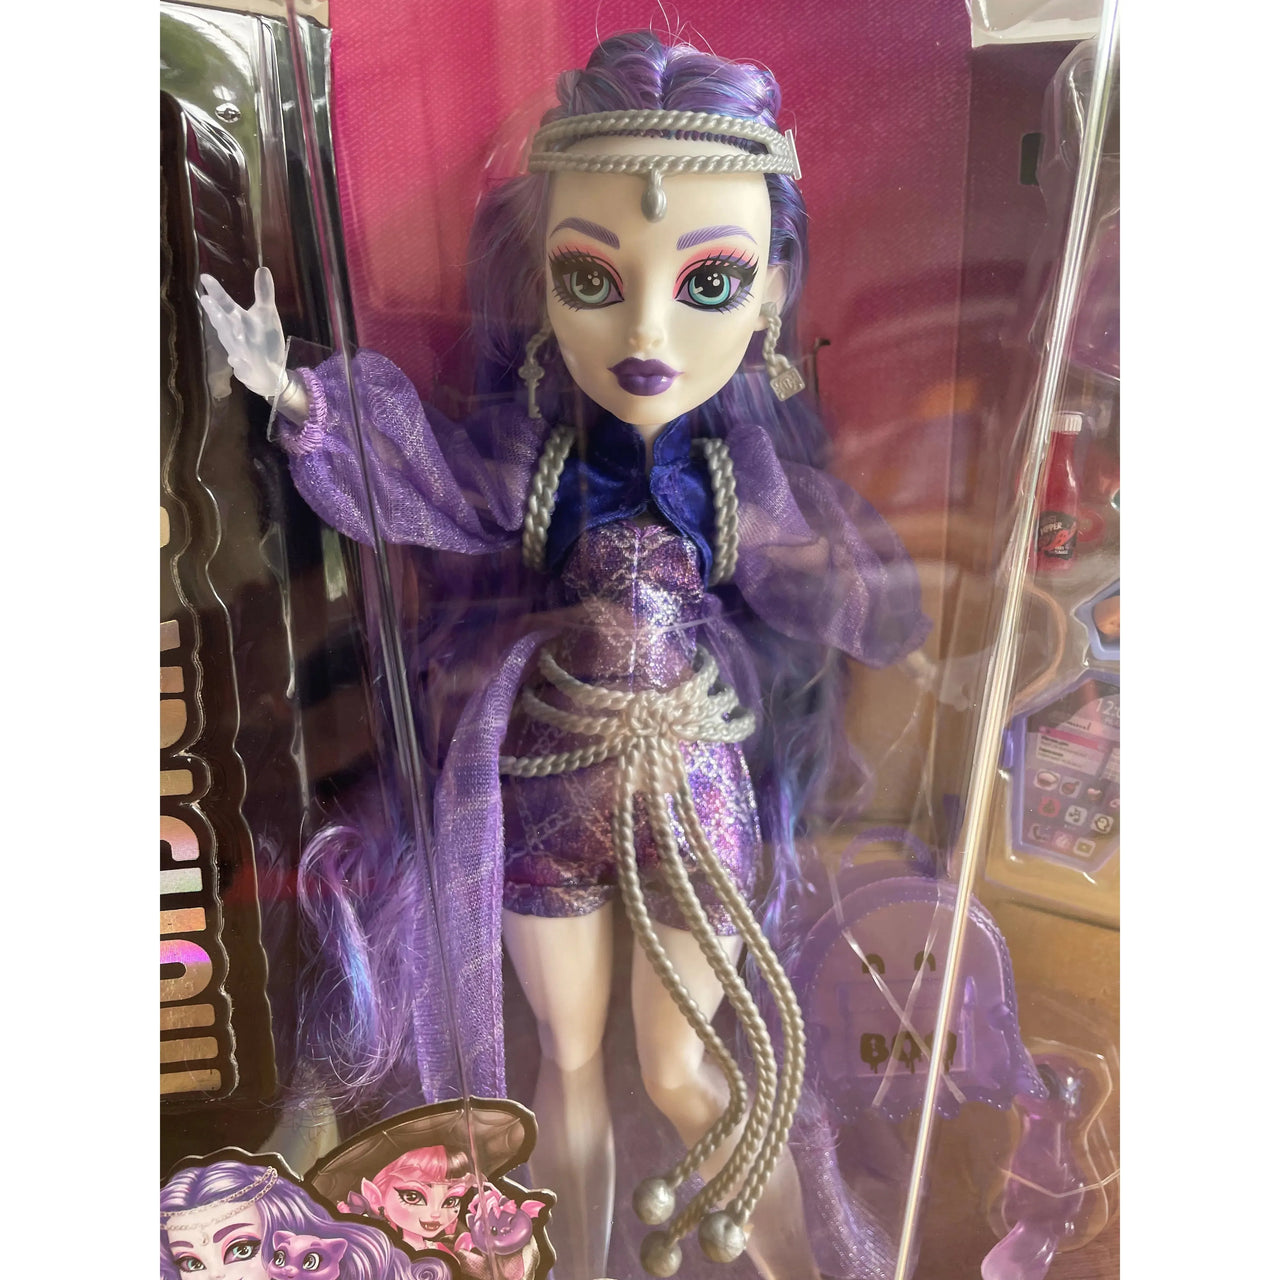 Monster High Spectra Vondergeist Doll Monster High